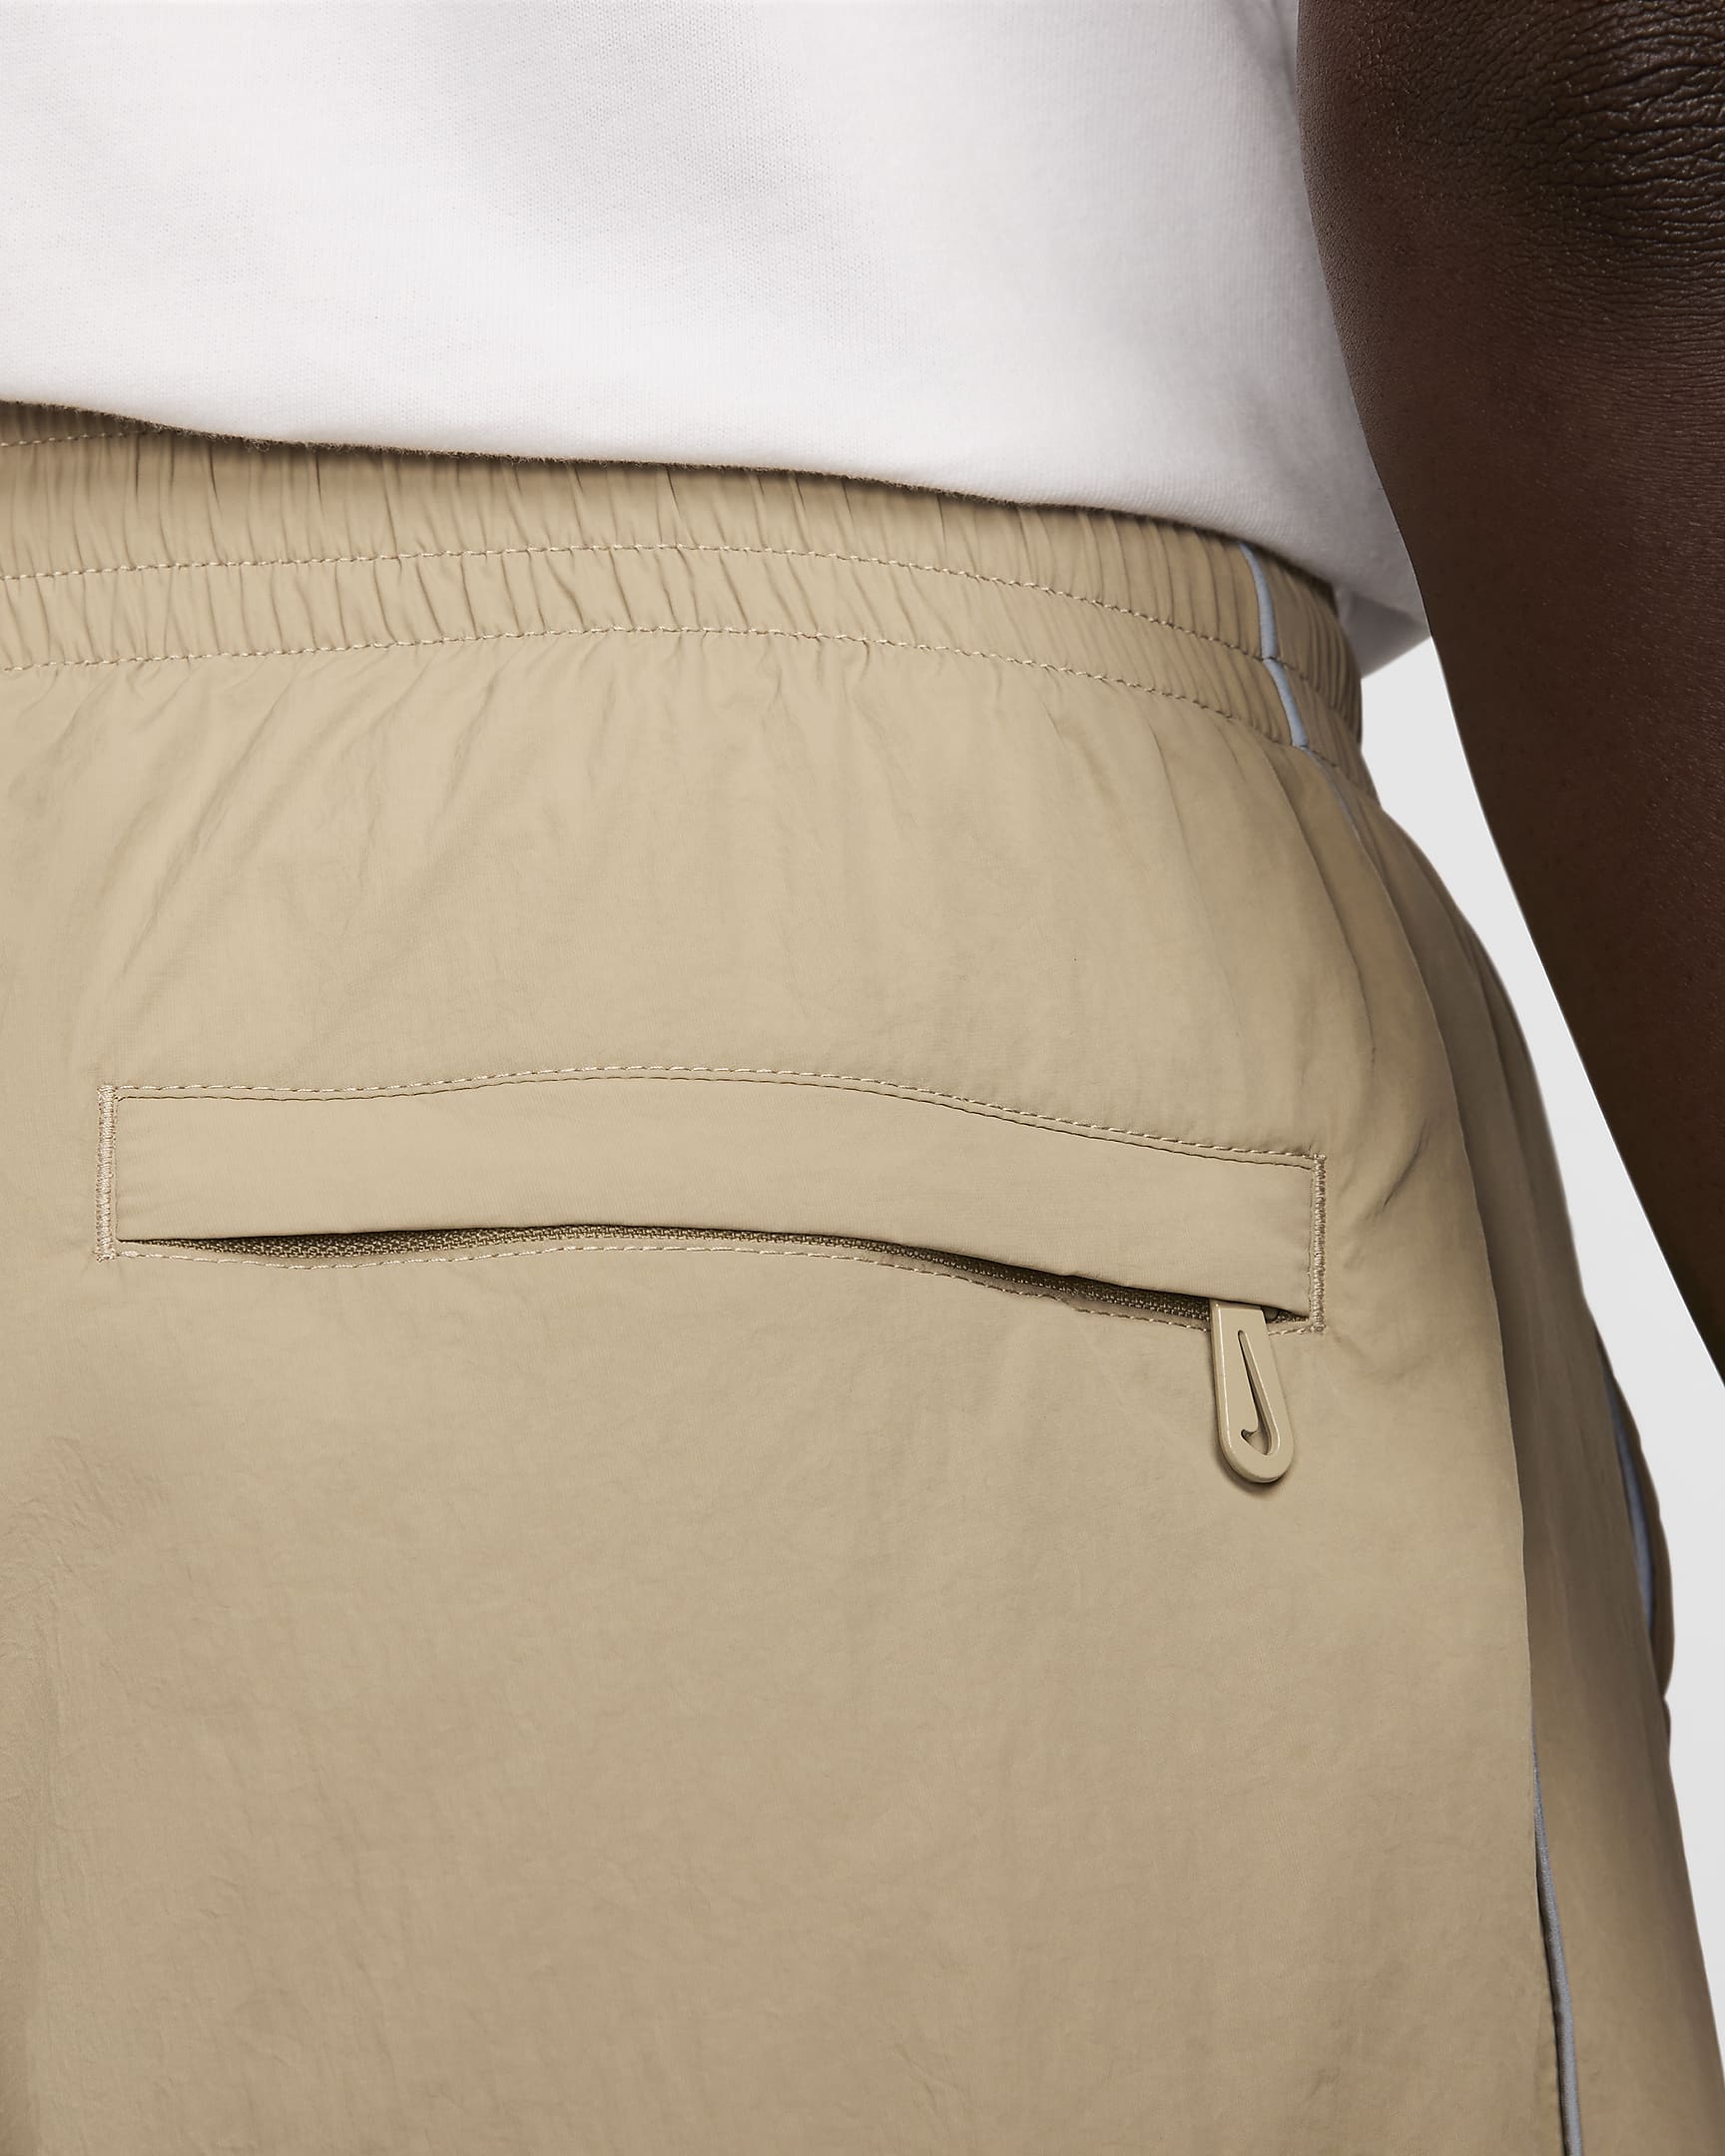 Nike Solo Swoosh Men's Track Pants - Khaki/White